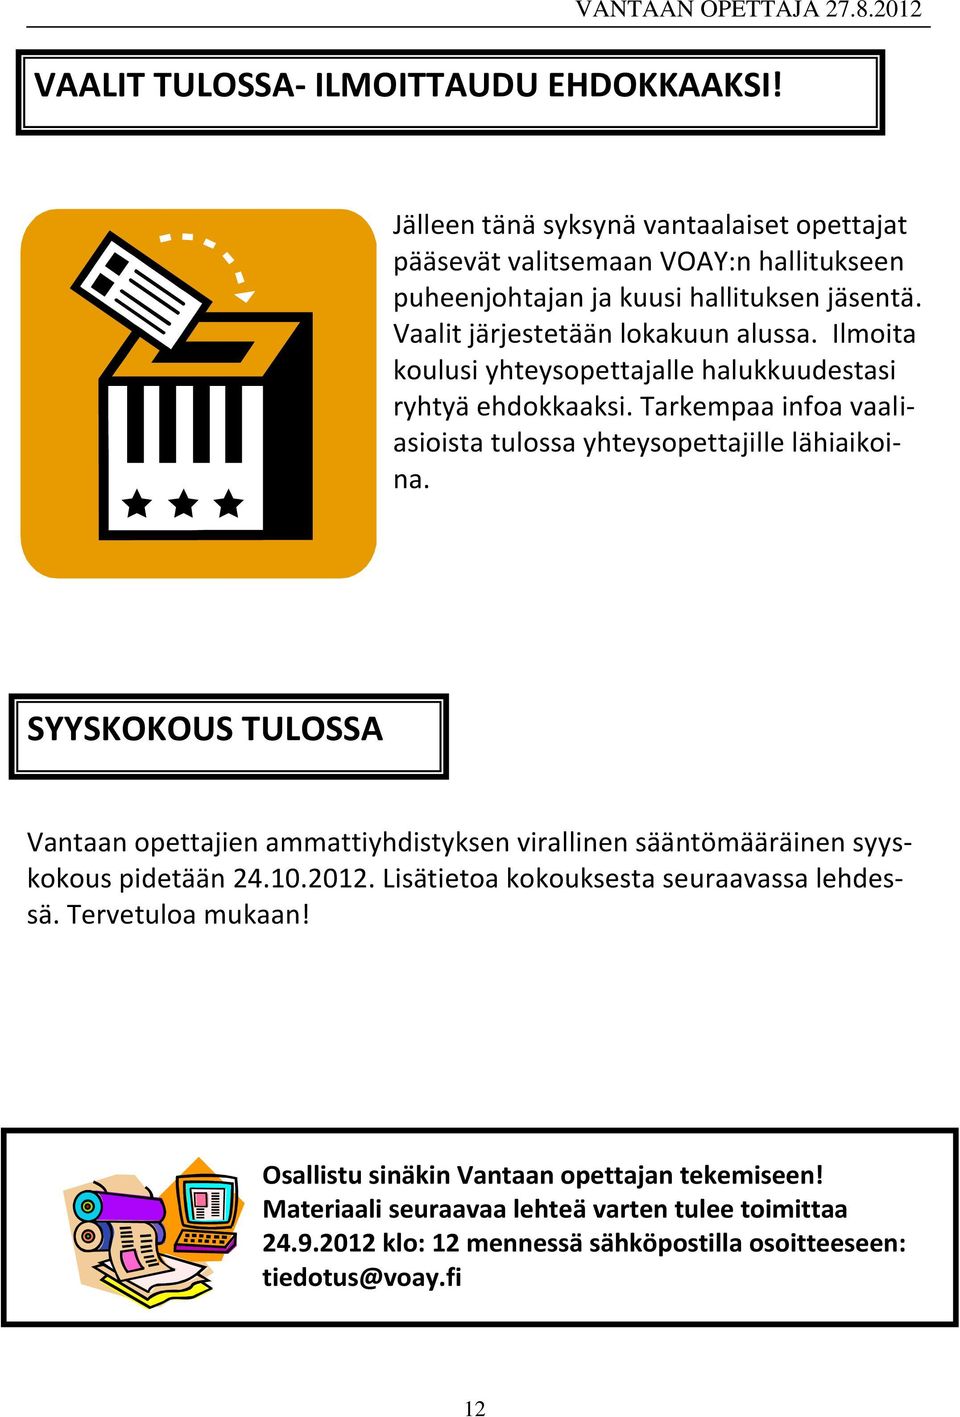 SYYSKOKOUS TULOSSA Vantaan opettajien ammattiyhdistyksen virallinen sääntömääräinen syyskokous pidetään 24.10.2012. Lisätietoa kokouksesta seuraavassa lehdessä.